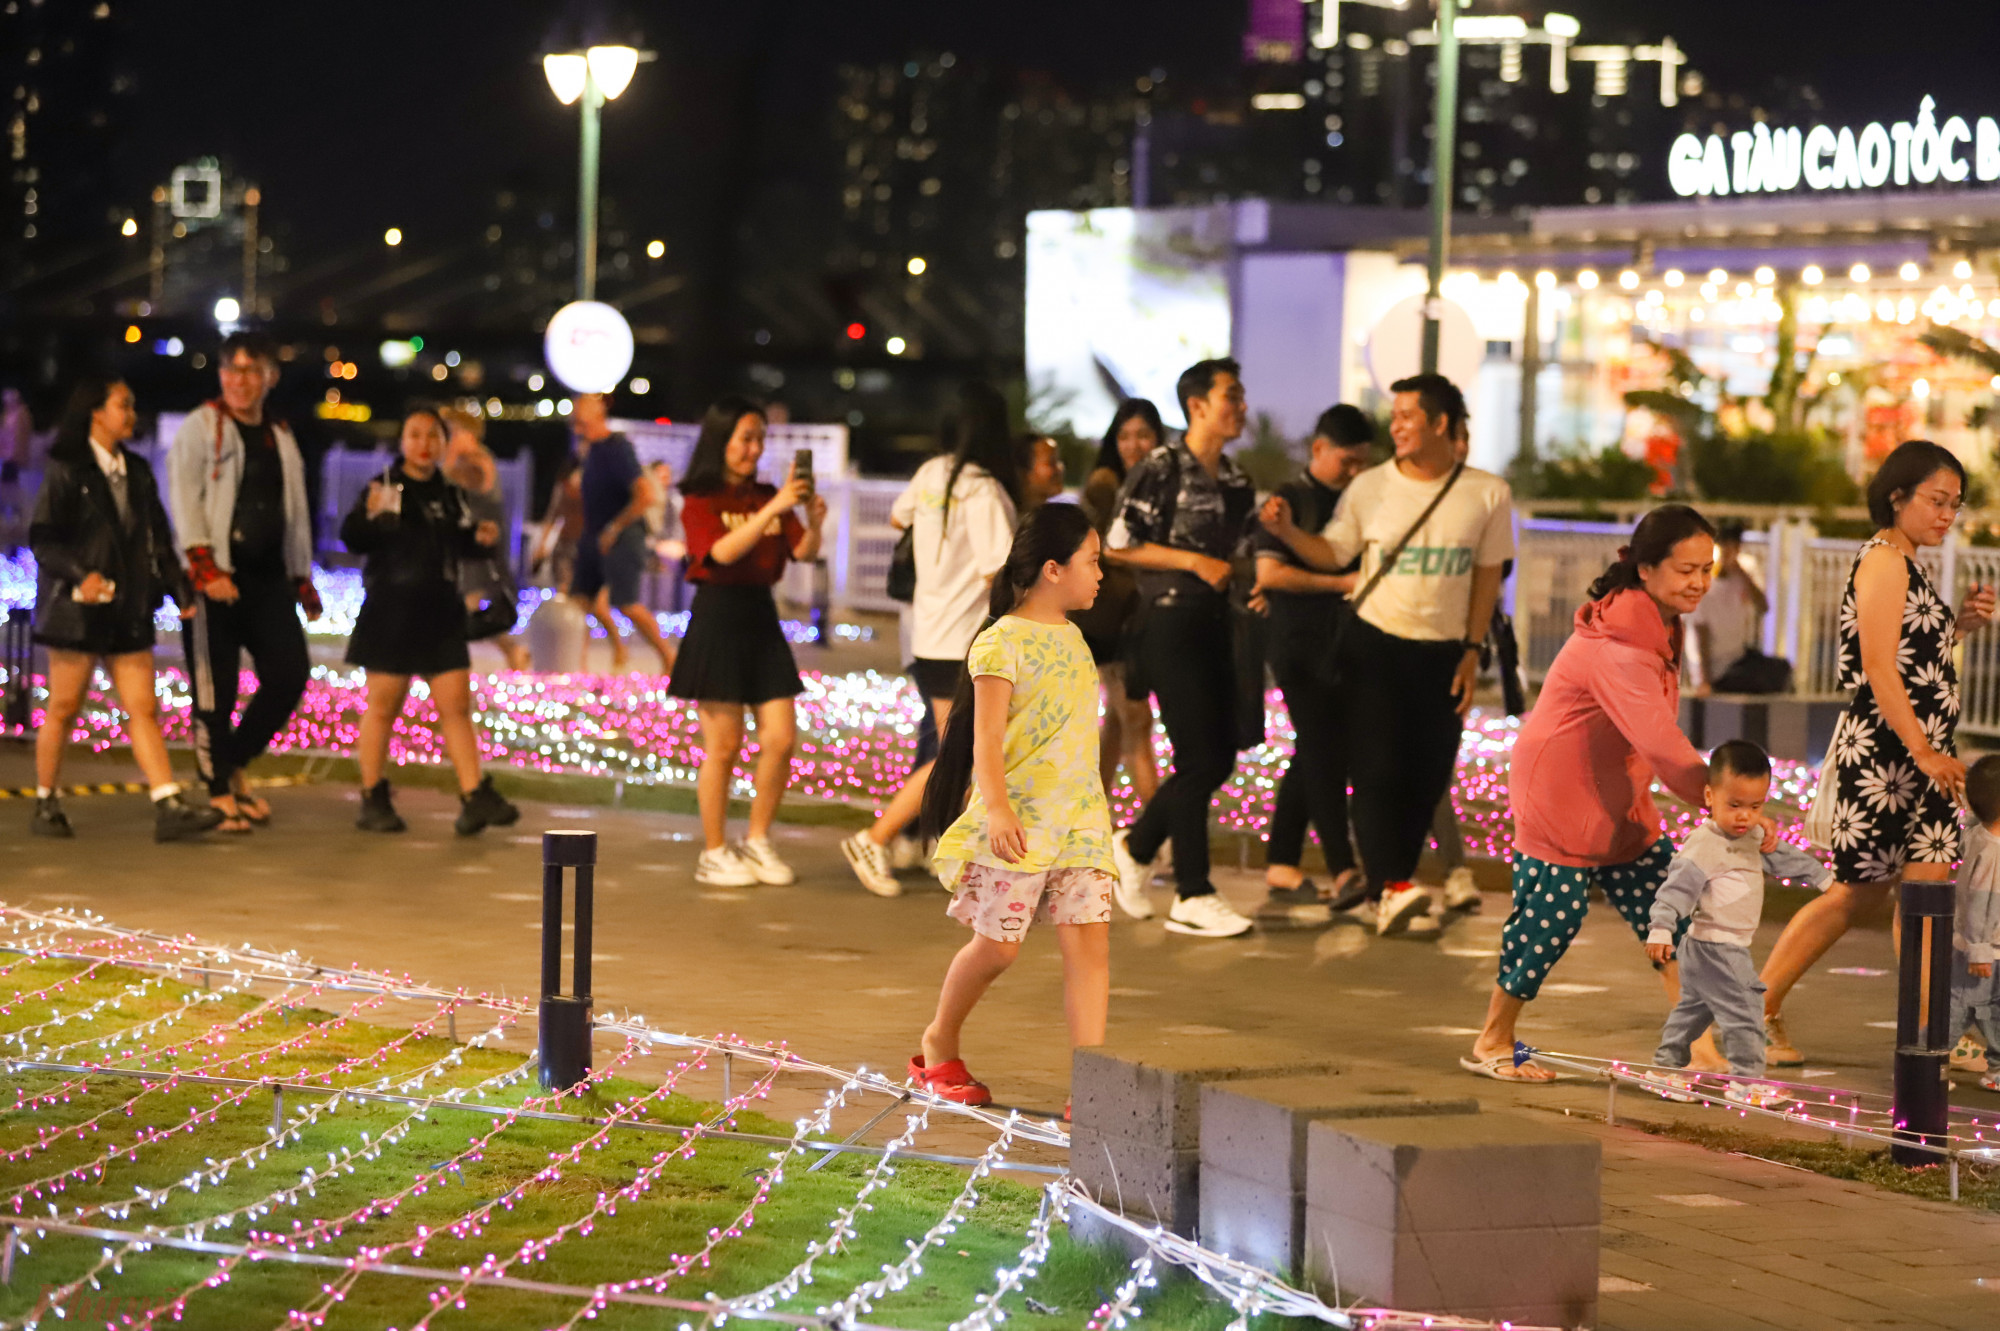 Từ 7g tối, hàng trăm người dân đã tập trung về khu vực công viên bến Bạch Đằng để vui chơi, thưởng thức hệ thống ánh sáng.